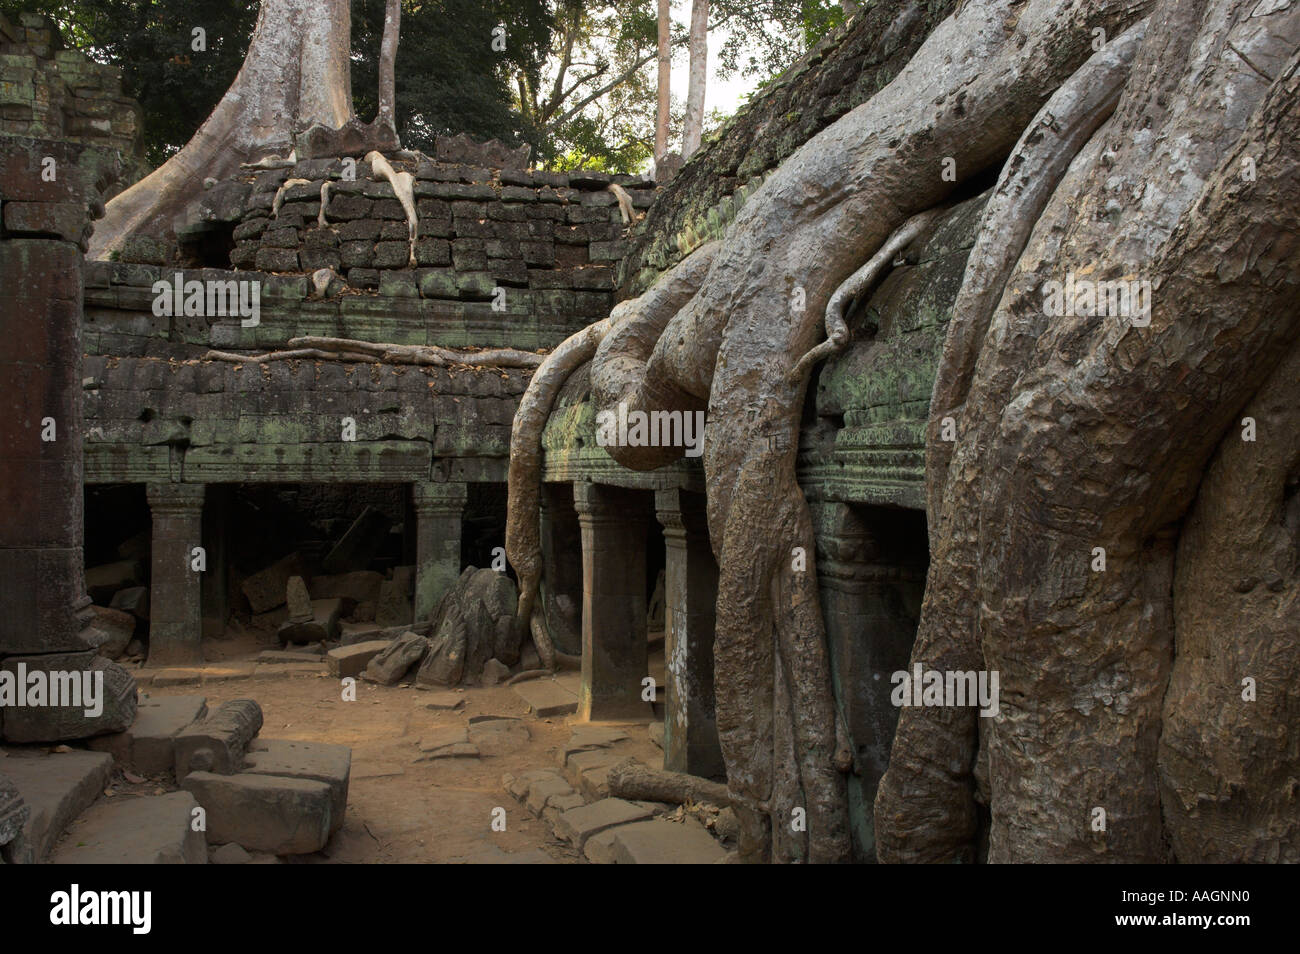 Kambodscha Siem Reap Provinz Tempeln von Angkor Archäologische Park Ta Prohm Tempel Innenhof mit erwachsen riesigen Baum Wurzeln Stockfoto